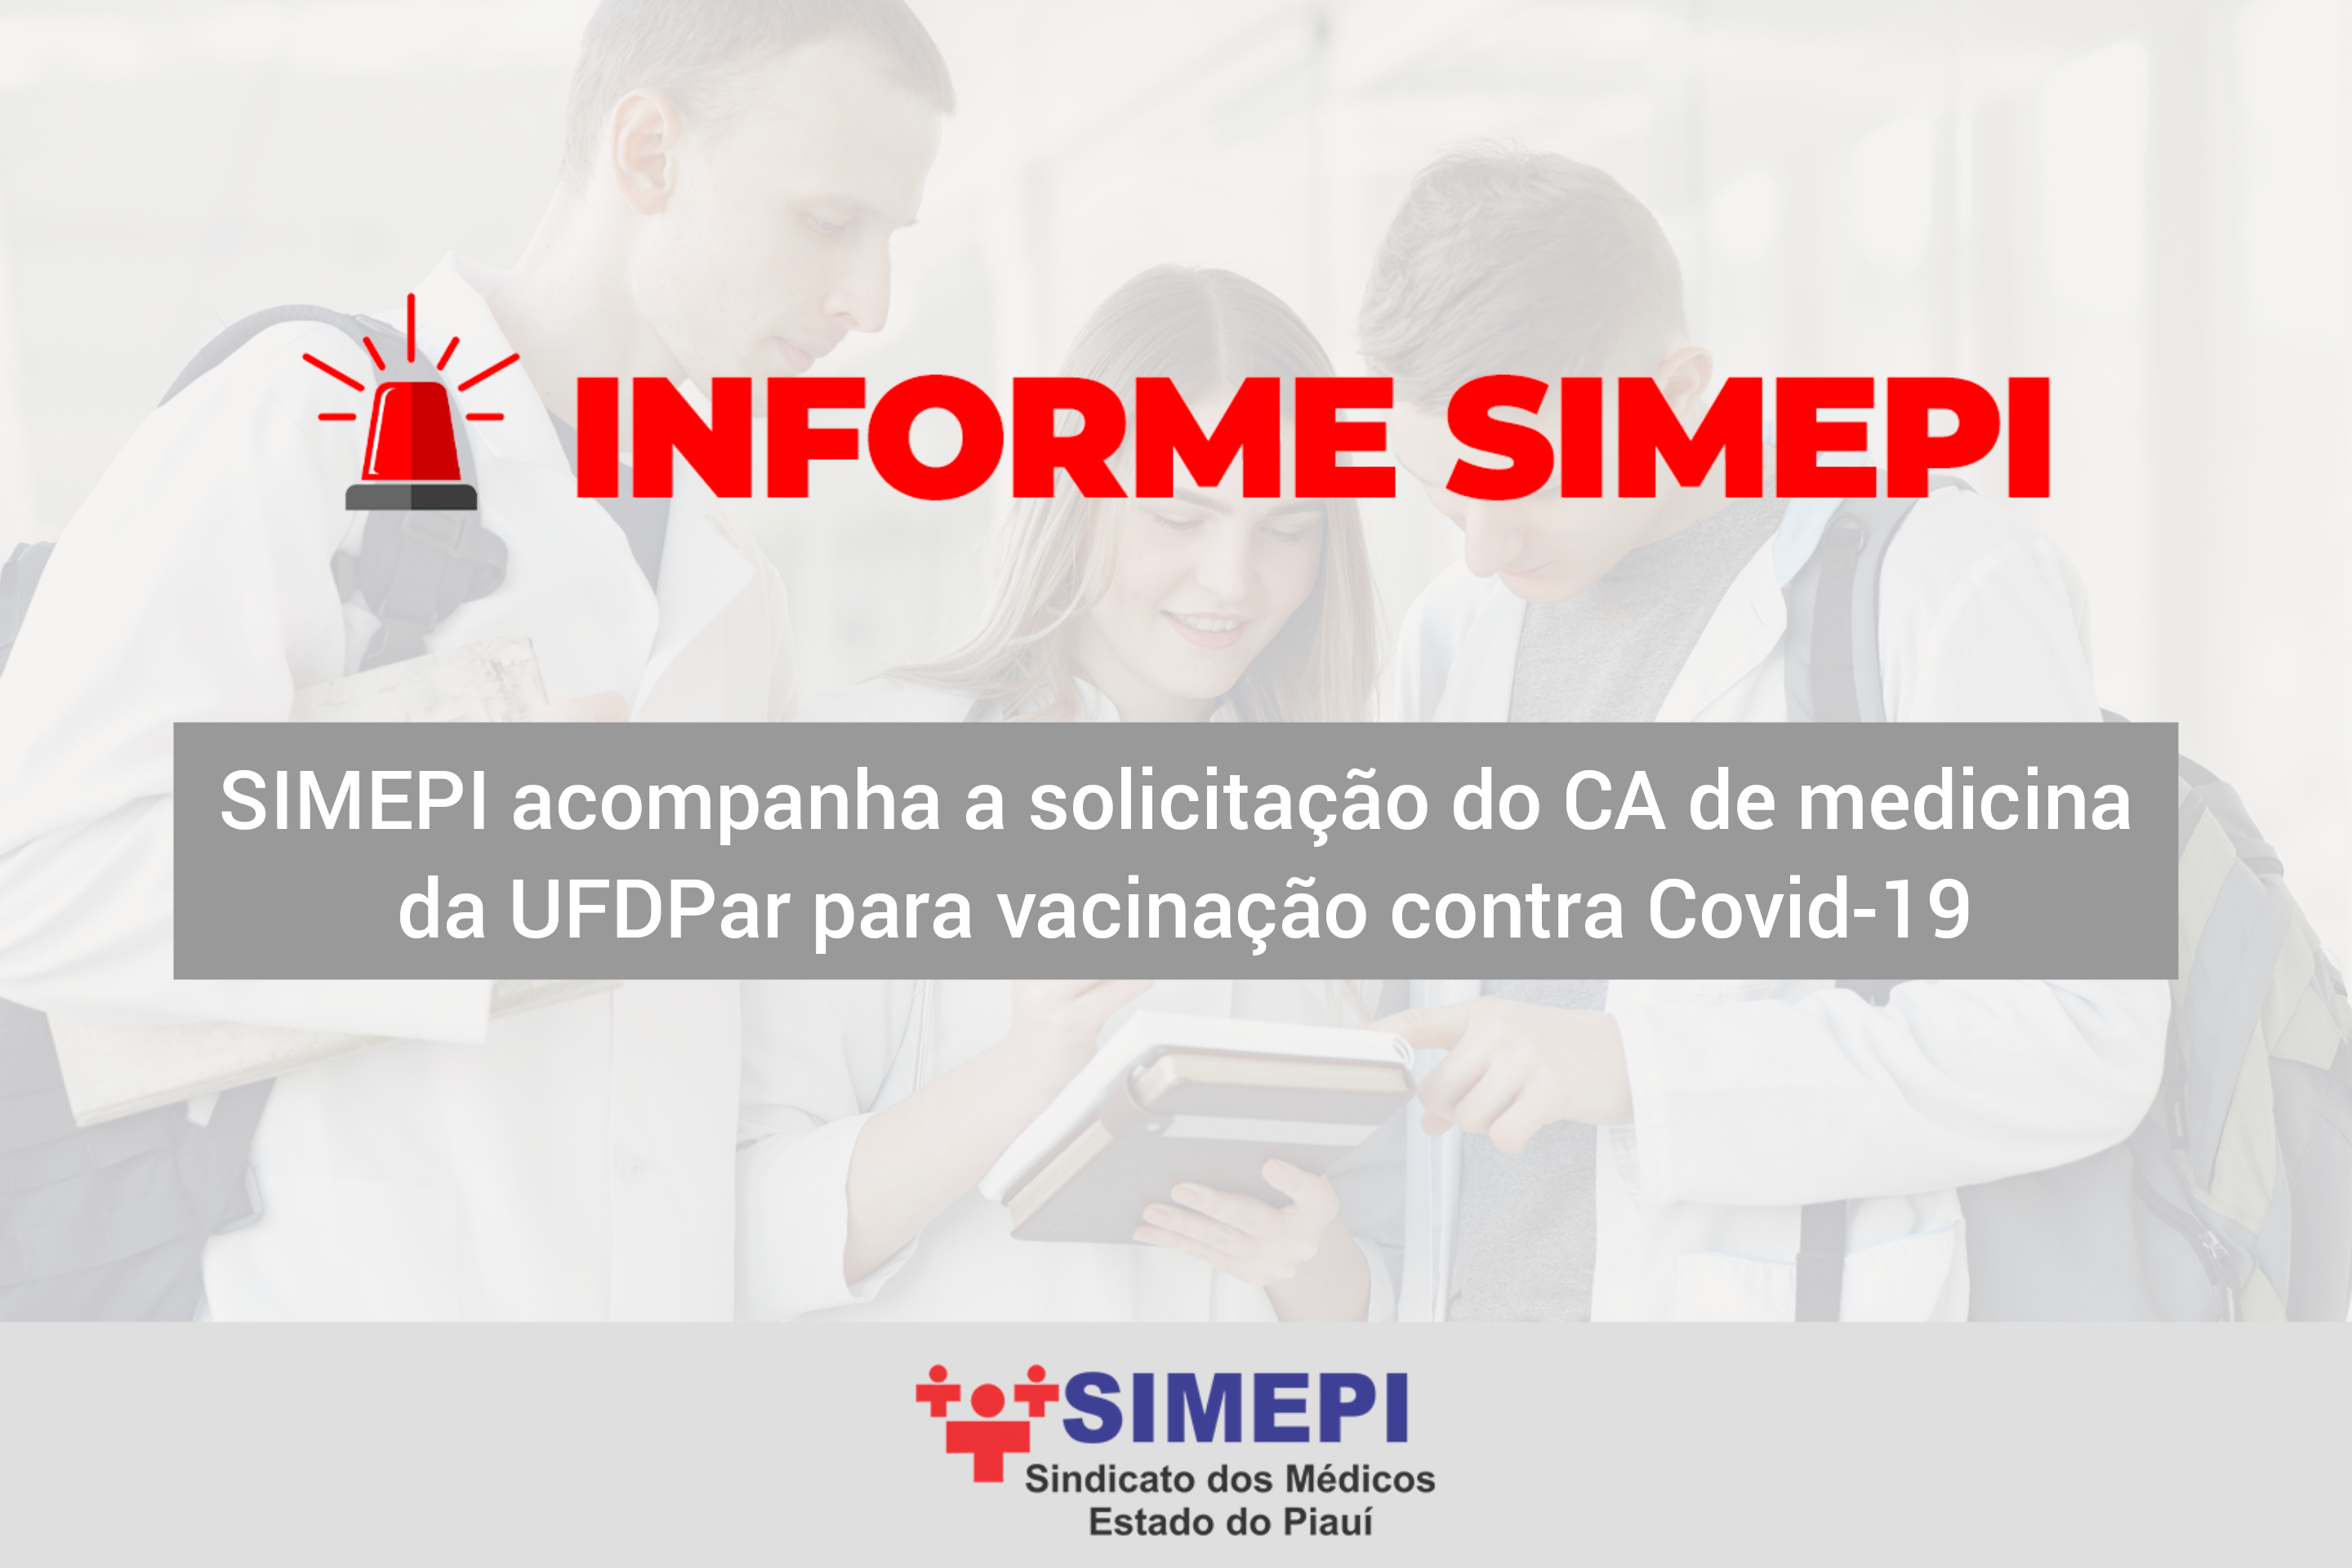 SIMEPI acompanha a solicitação do CA de medicina da UFDPar para vacinação contra a COVID-19